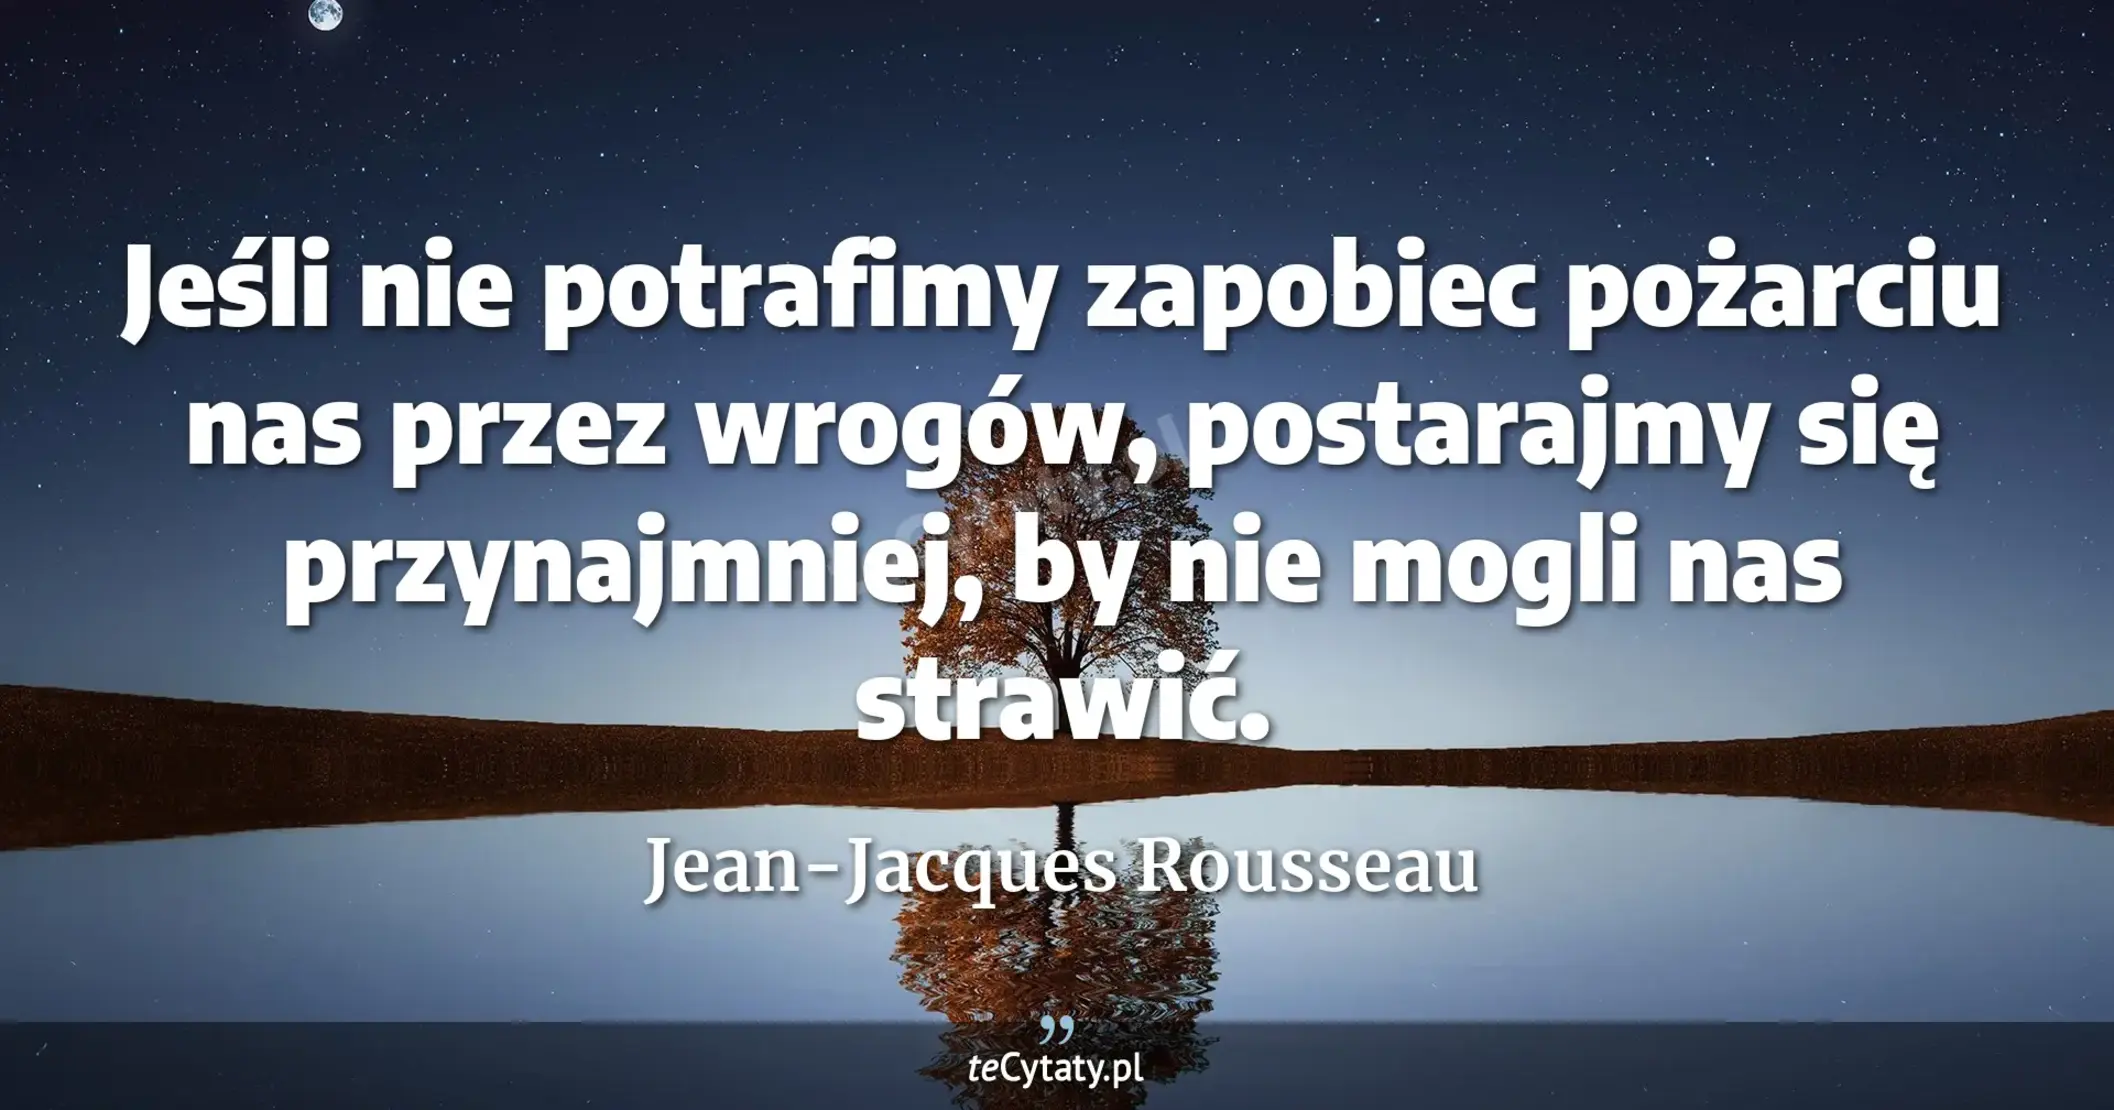 Jeśli nie potrafimy zapobiec pożarciu nas przez wrogów, postarajmy się przynajmniej, by nie mogli nas strawić. - Jean-Jacques Rousseau